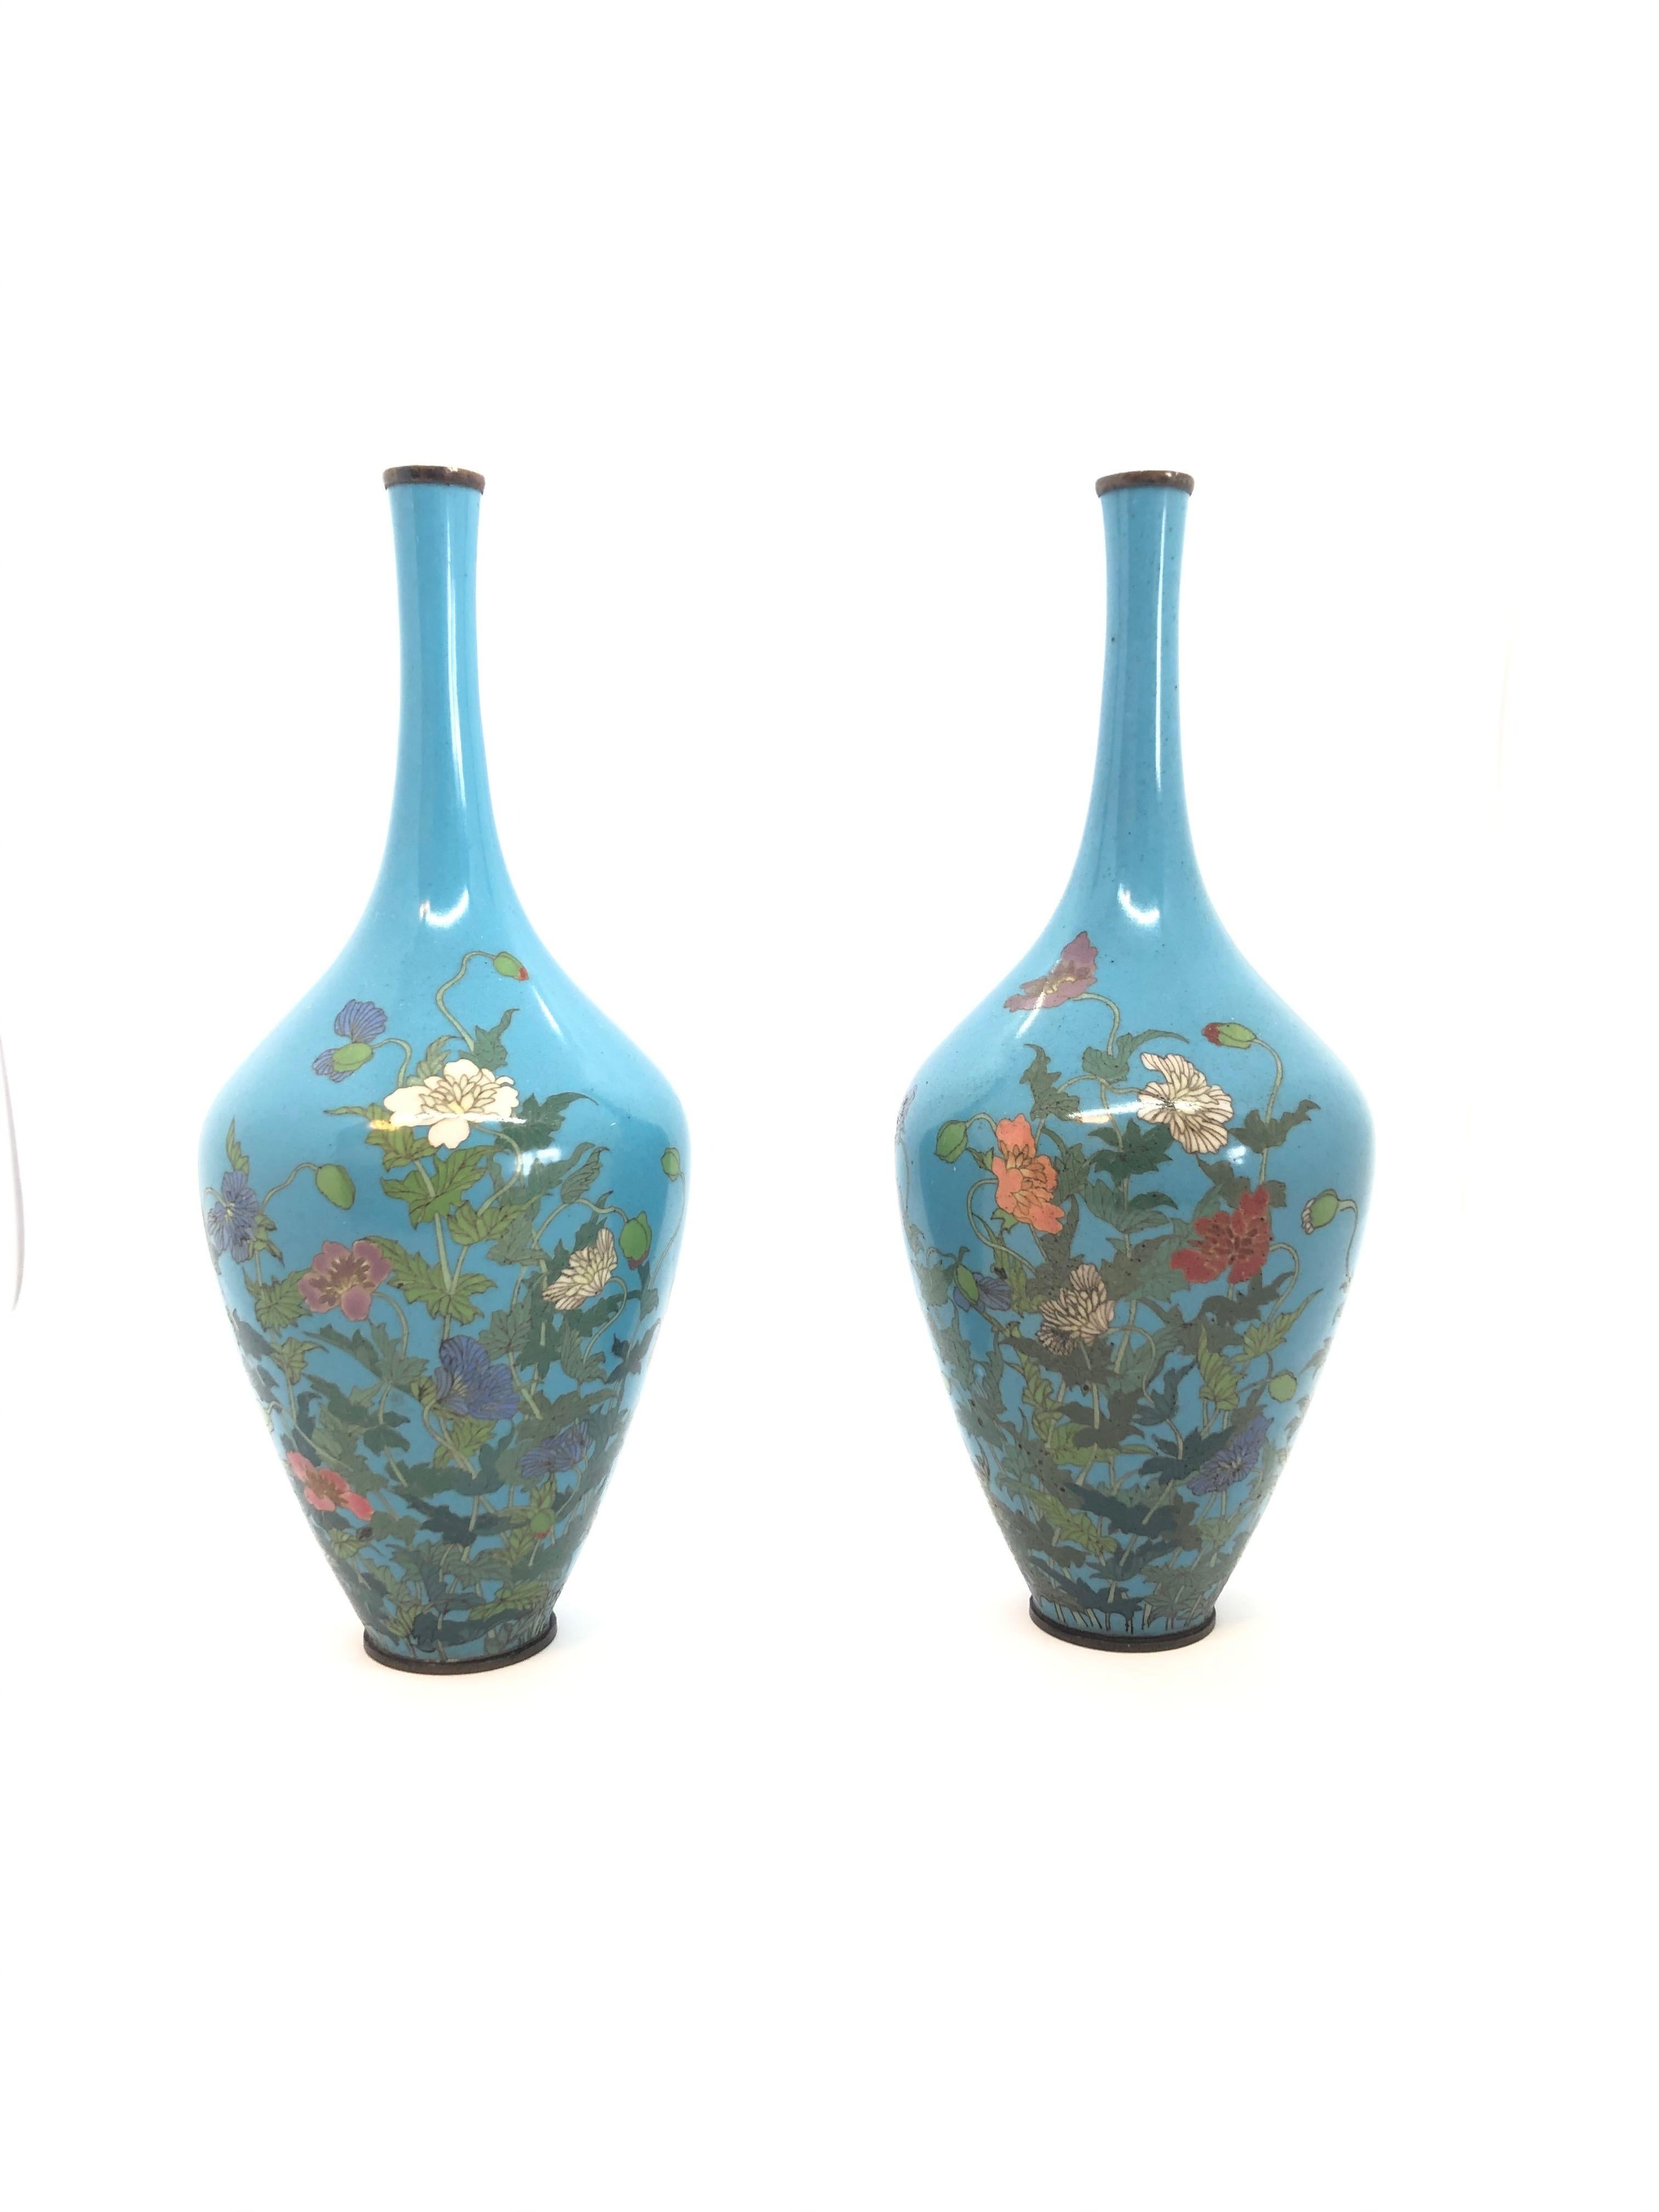 Paire de vases cloisonnés japonais décoratifs avec des motifs de fleurs sur fond turquoise. Période Meiji.